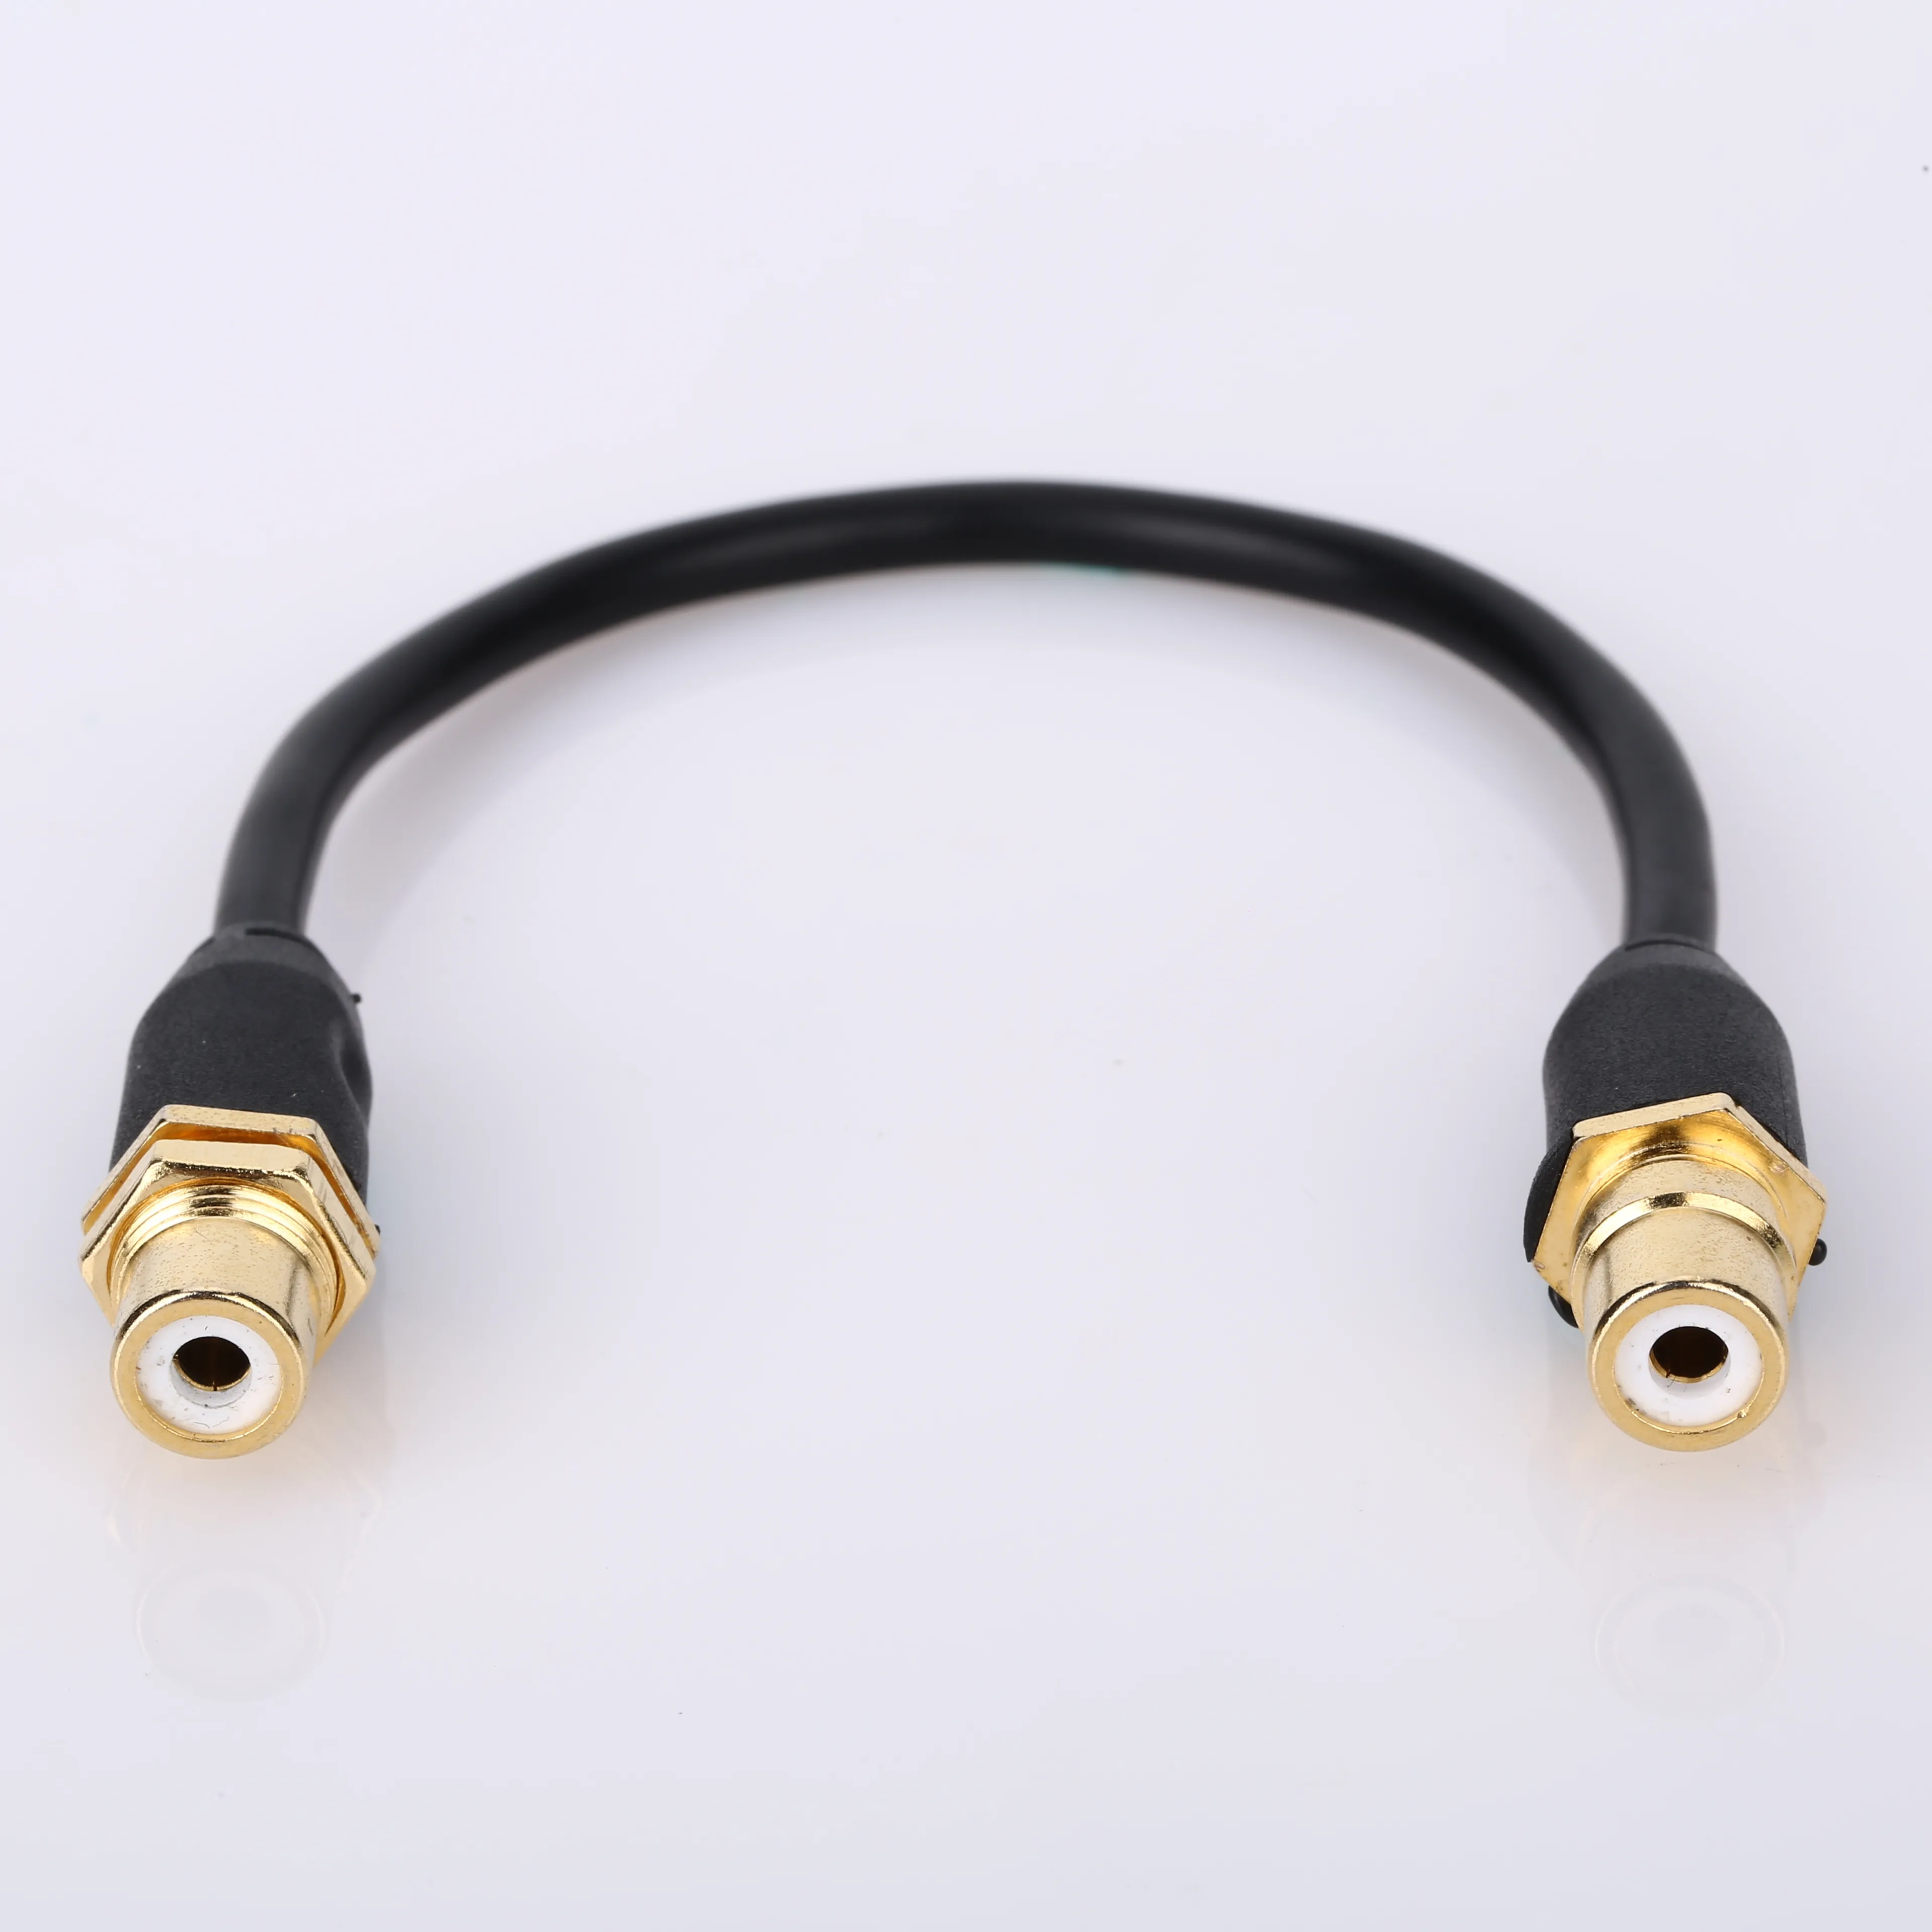 Audio-/Video-Kabel RCA Stecker zu Stecker Montagekabel gute Qualität zhuhai rca Keystone Jack rca-Kabel